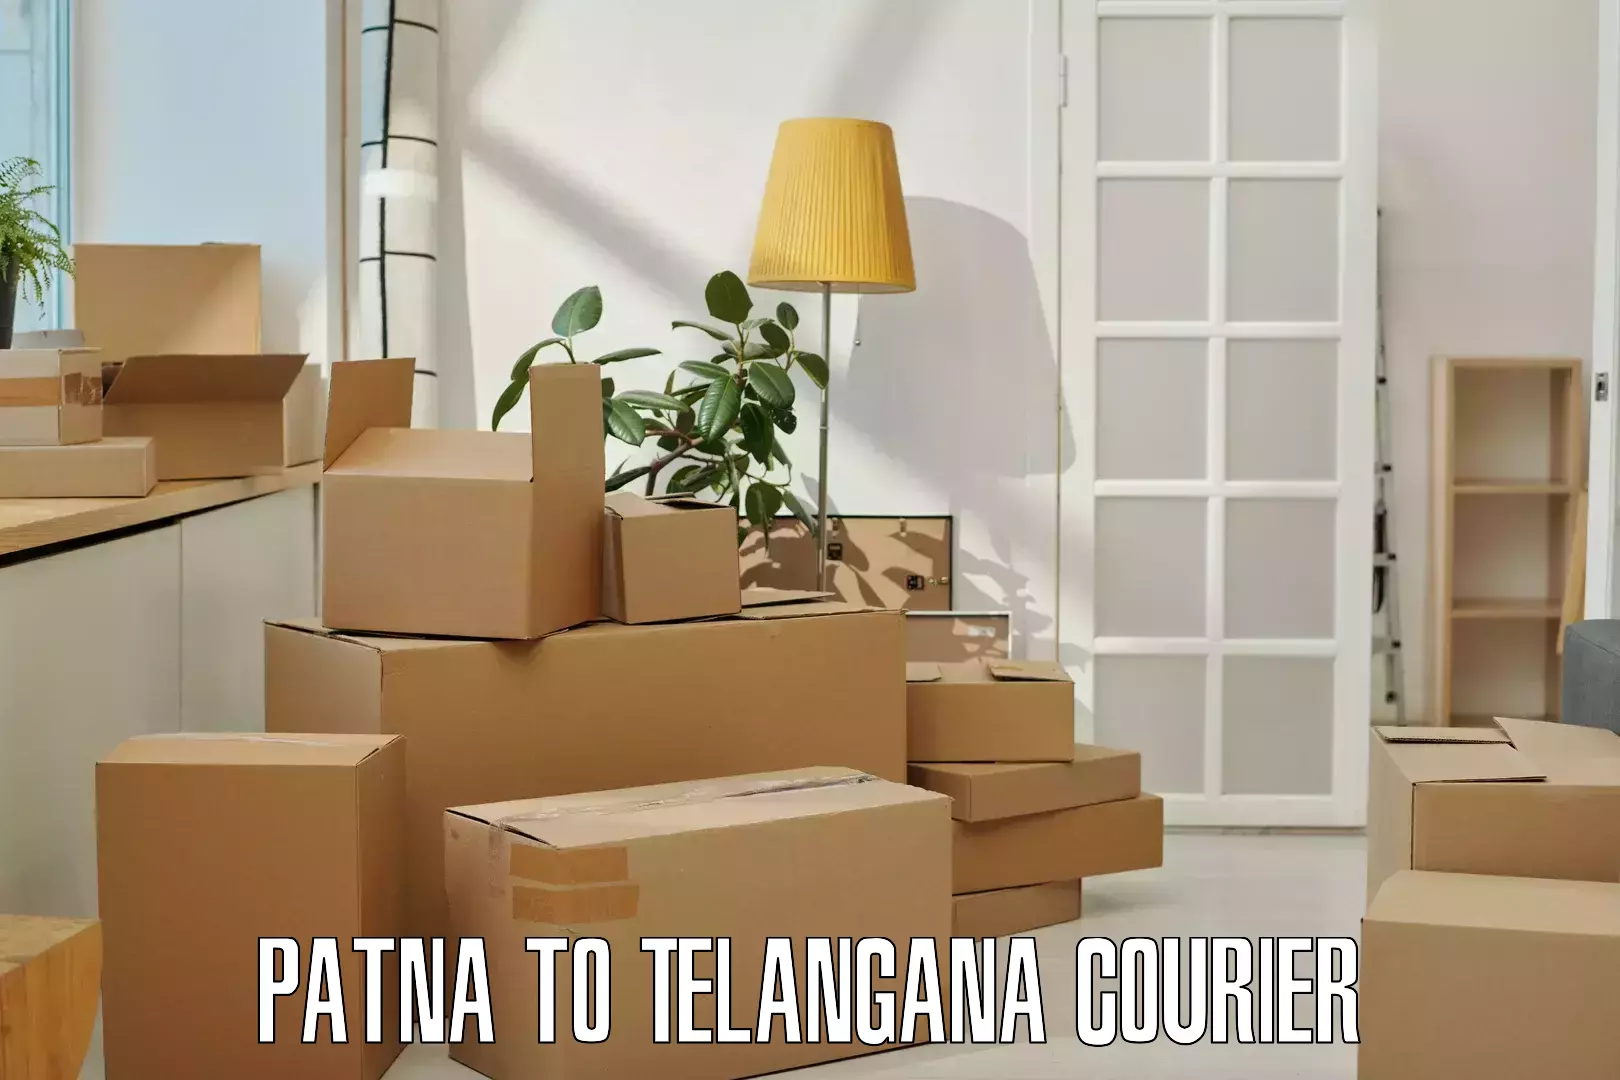 High-capacity parcel service Patna to Wanaparthy